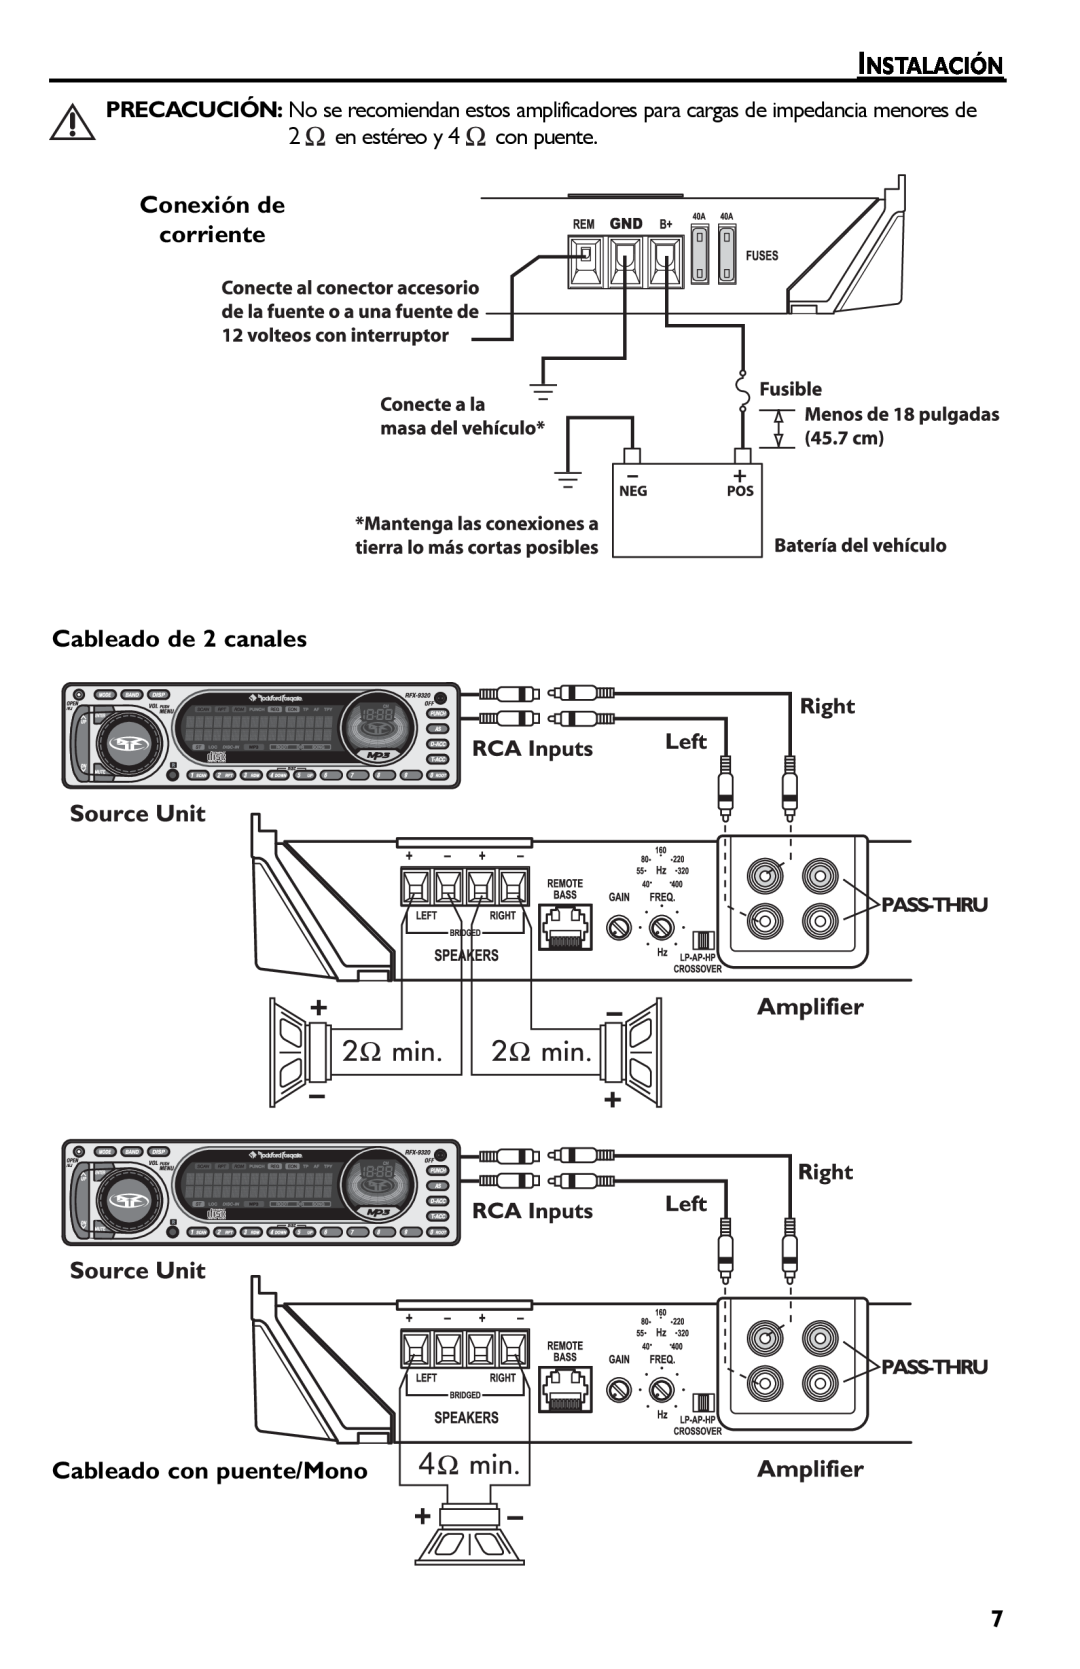 Rockford Fosgate Punch 45 manual Instalación, Conexión de corriente Cableado de 2 canales, Cableado con puente/Mono 